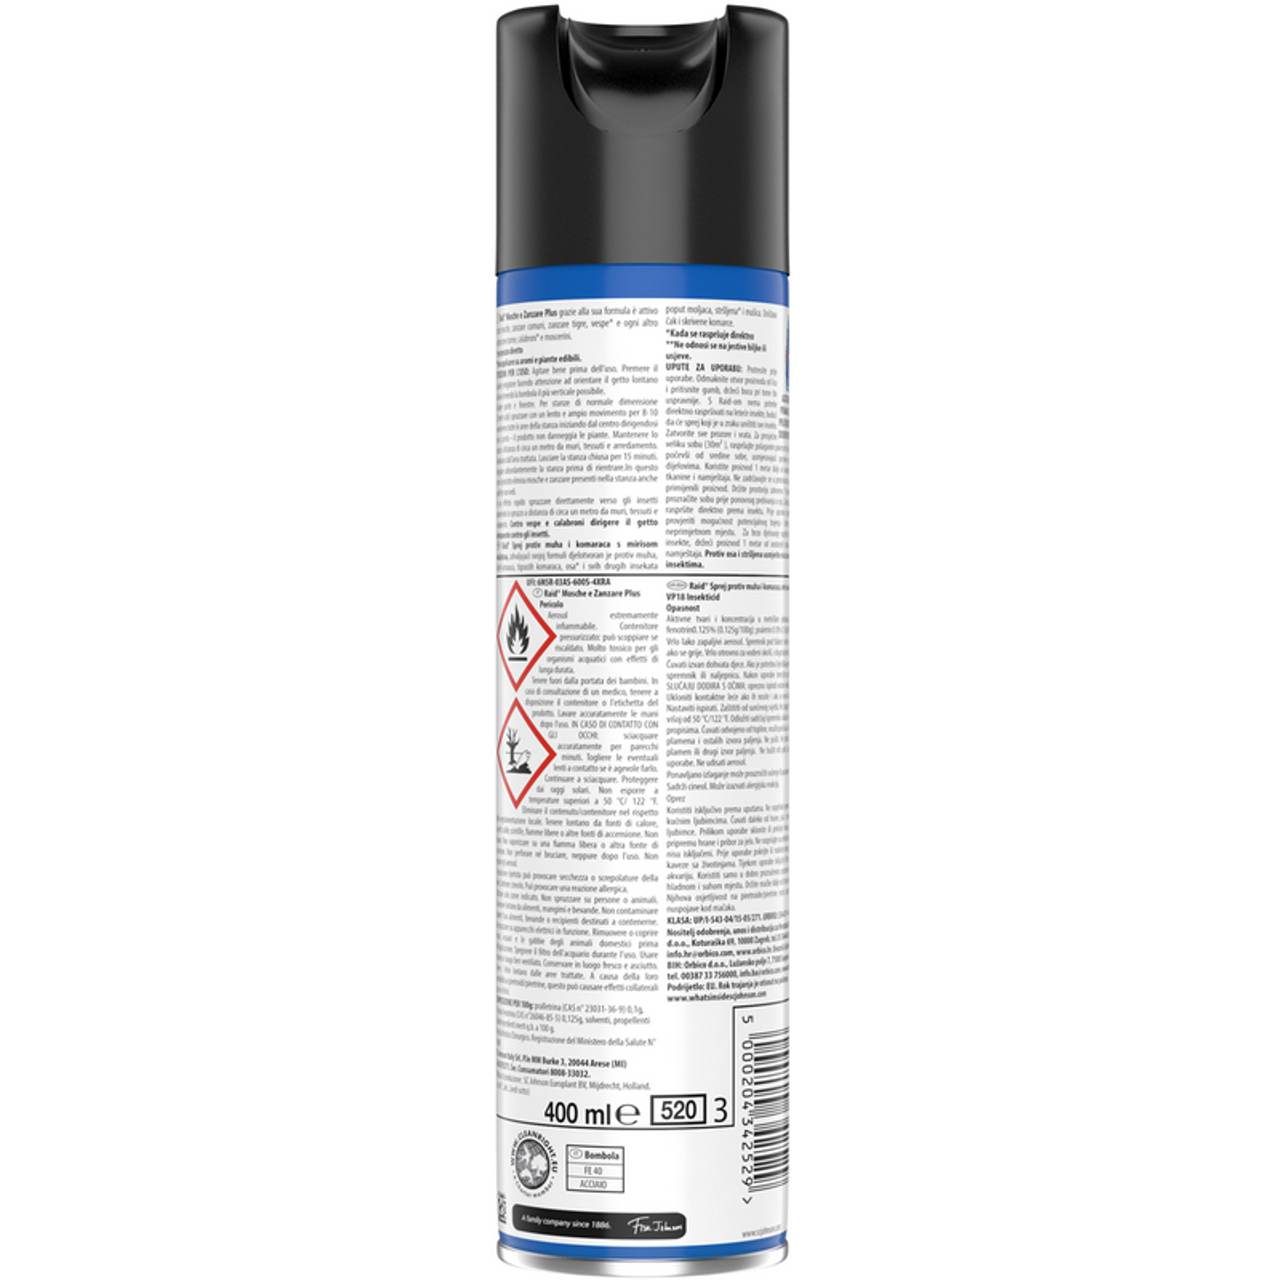 RAID Inseticida Spray moscas e mais mosquitos Ação rápida com o aroma de óleo de eucalipto 400 ml